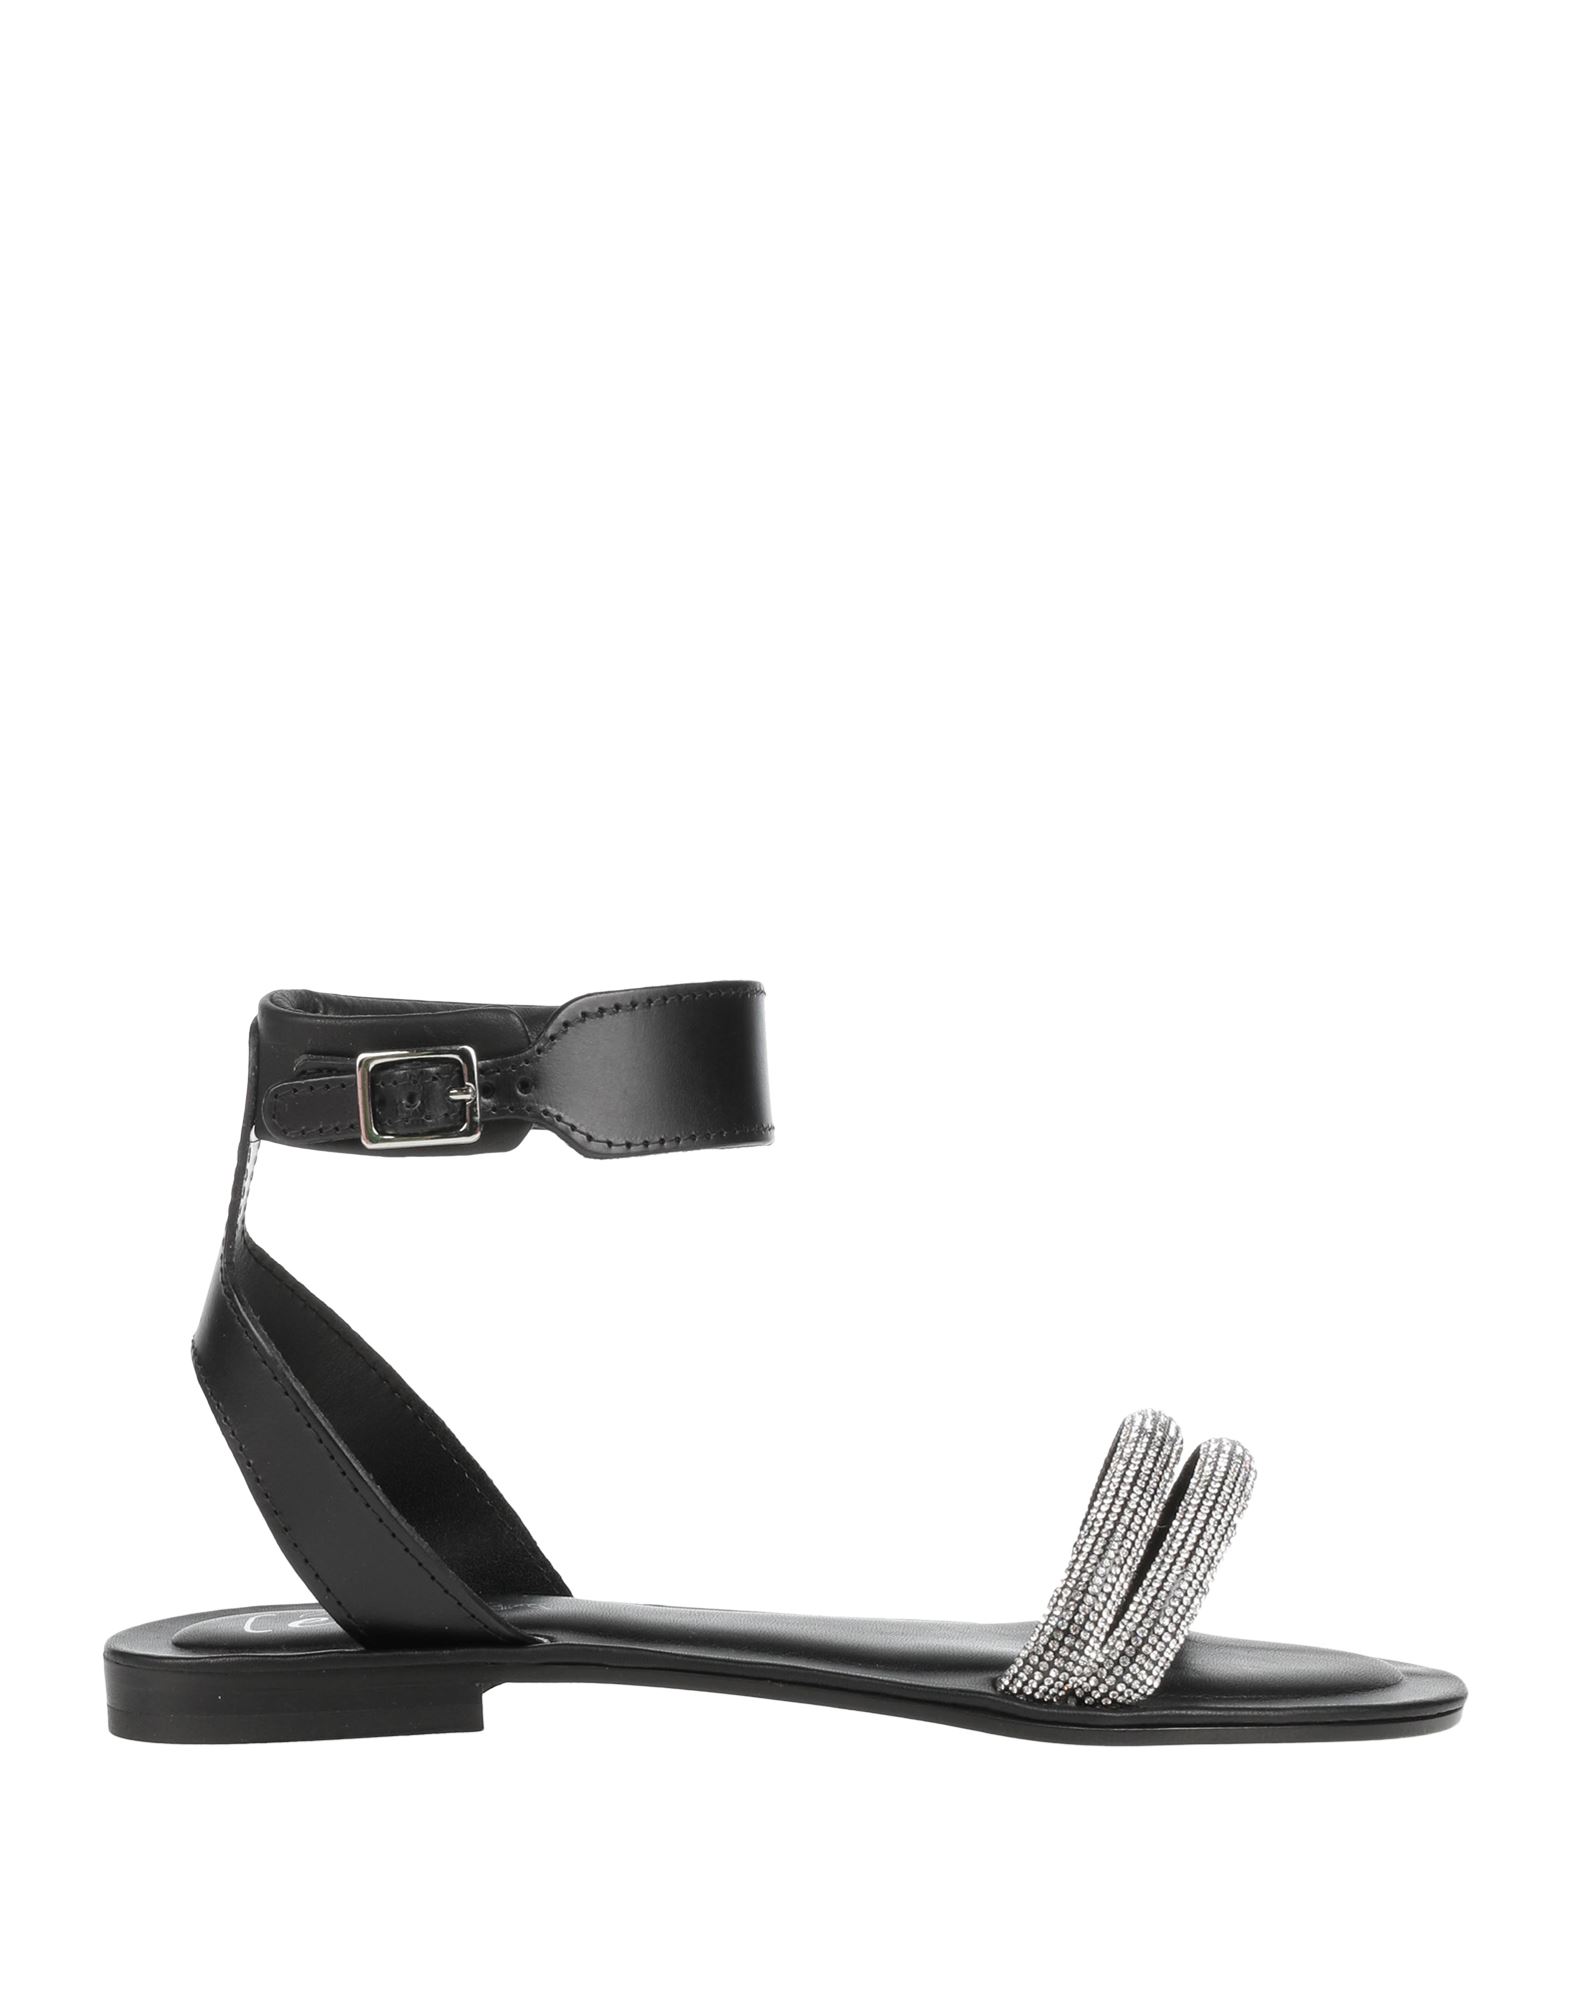 Cécile Woman Sandals Black Size 10 Leather